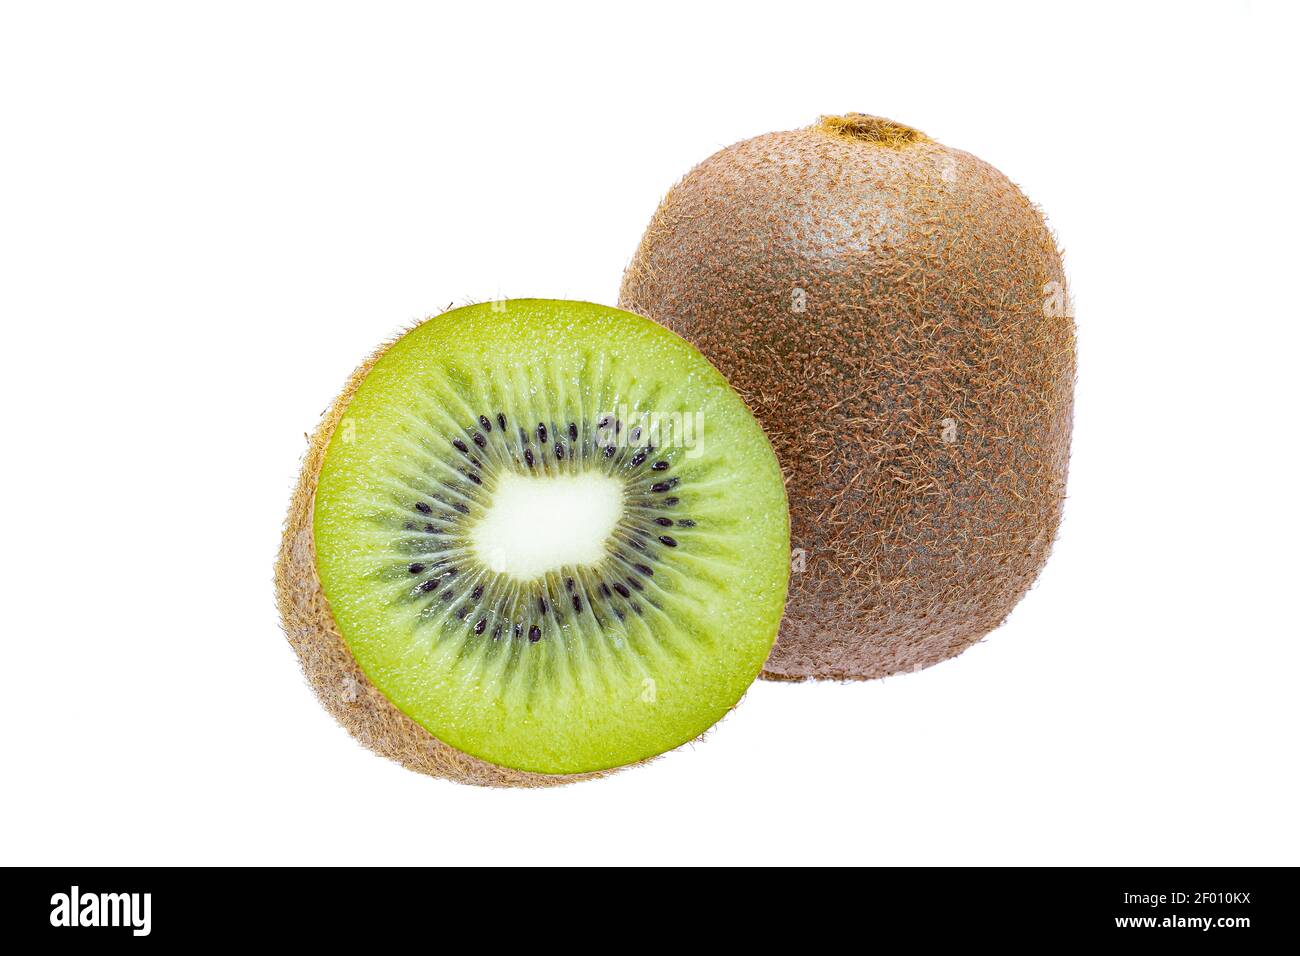 Ripe whole kiwi fruit and a half kiwifruit isolated on white background Stock Photo